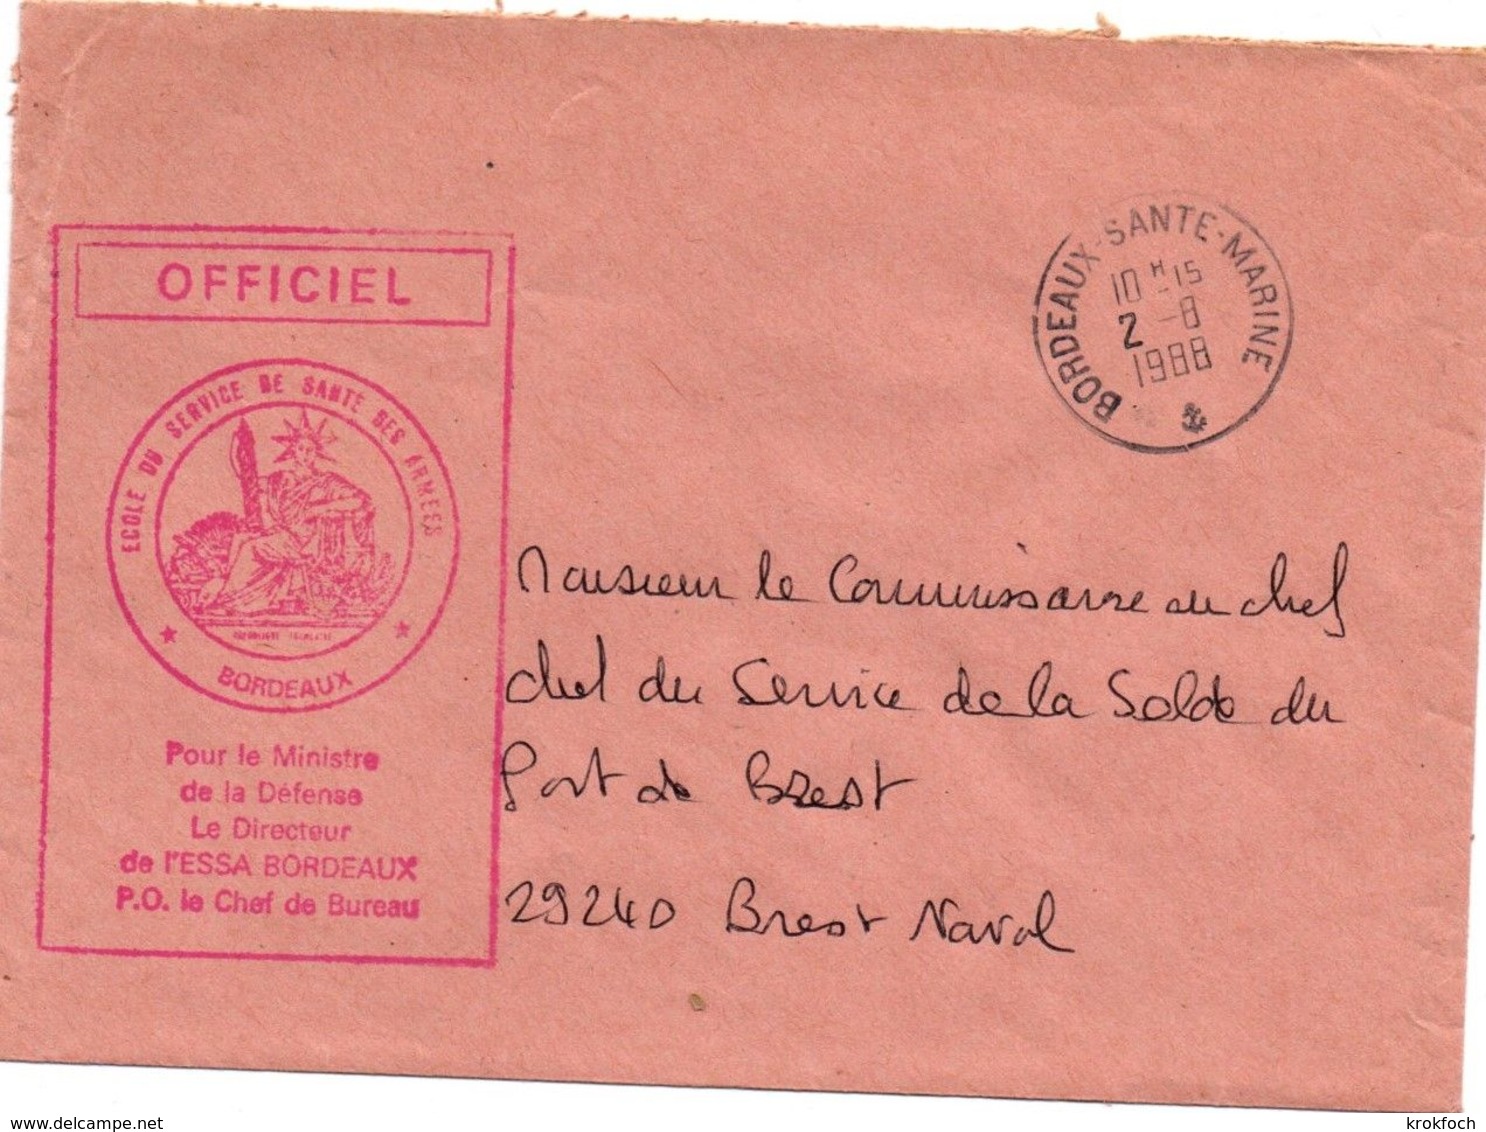 Bordeaux Santé Marine 1988 - Ecole Du SSA Service De Santé - Médecine Militaire - Poste Navale - Naval Post